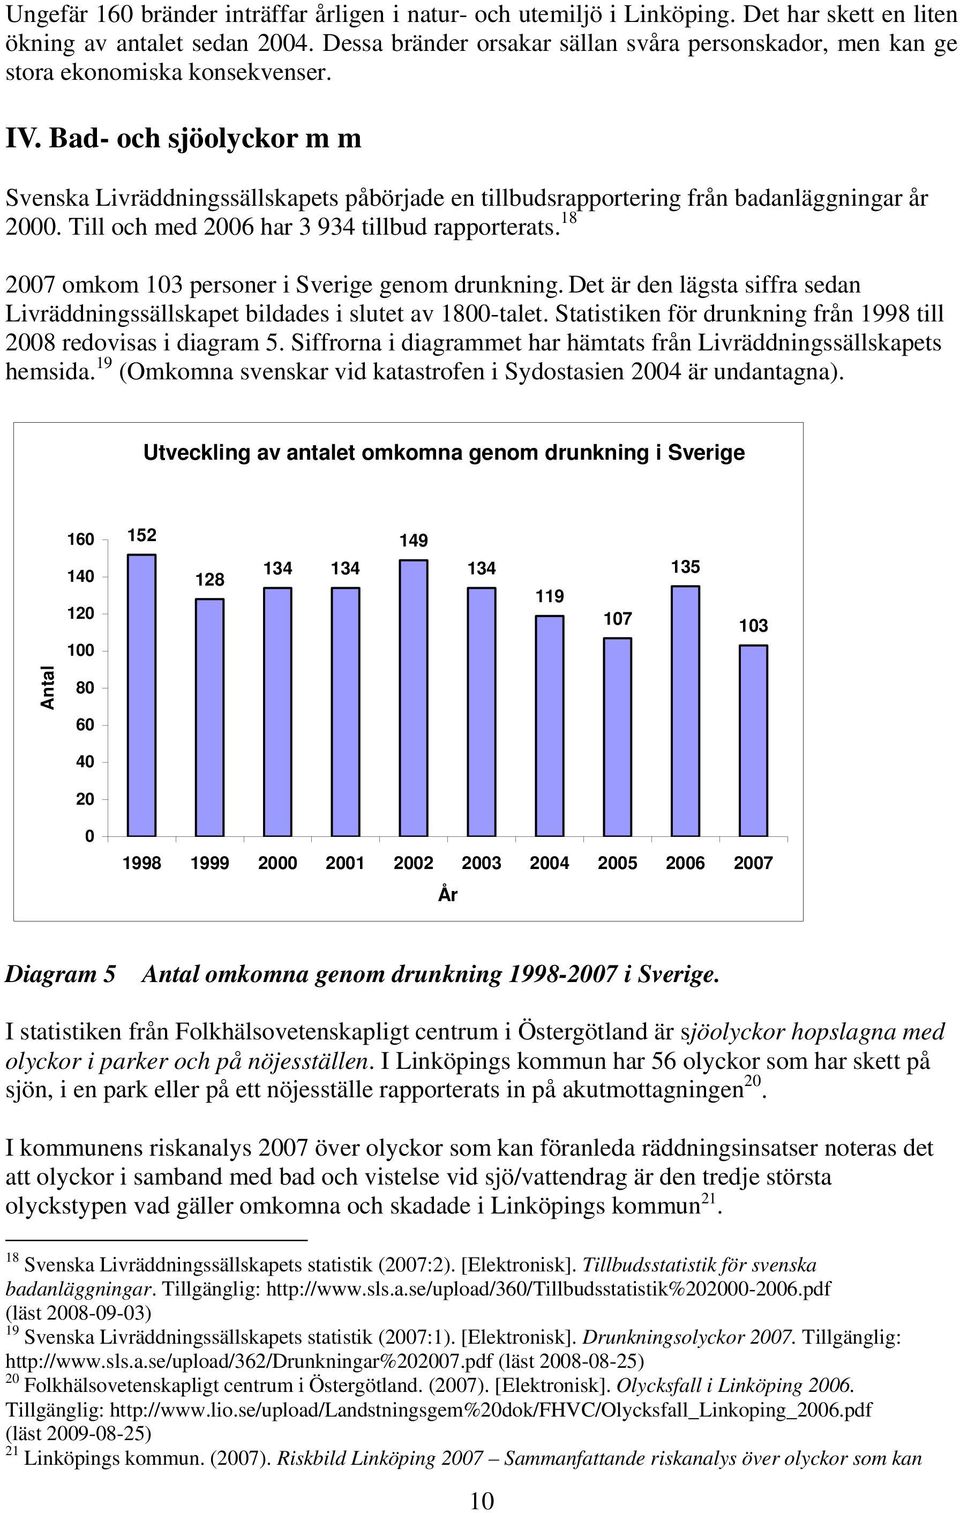 Bad- och sjöolyckor m m Svenska Livräddningssällskapets påbörjade en tillbudsrapportering från badanläggningar år 2000. Till och med 2006 har 3 934 tillbud rapporterats.